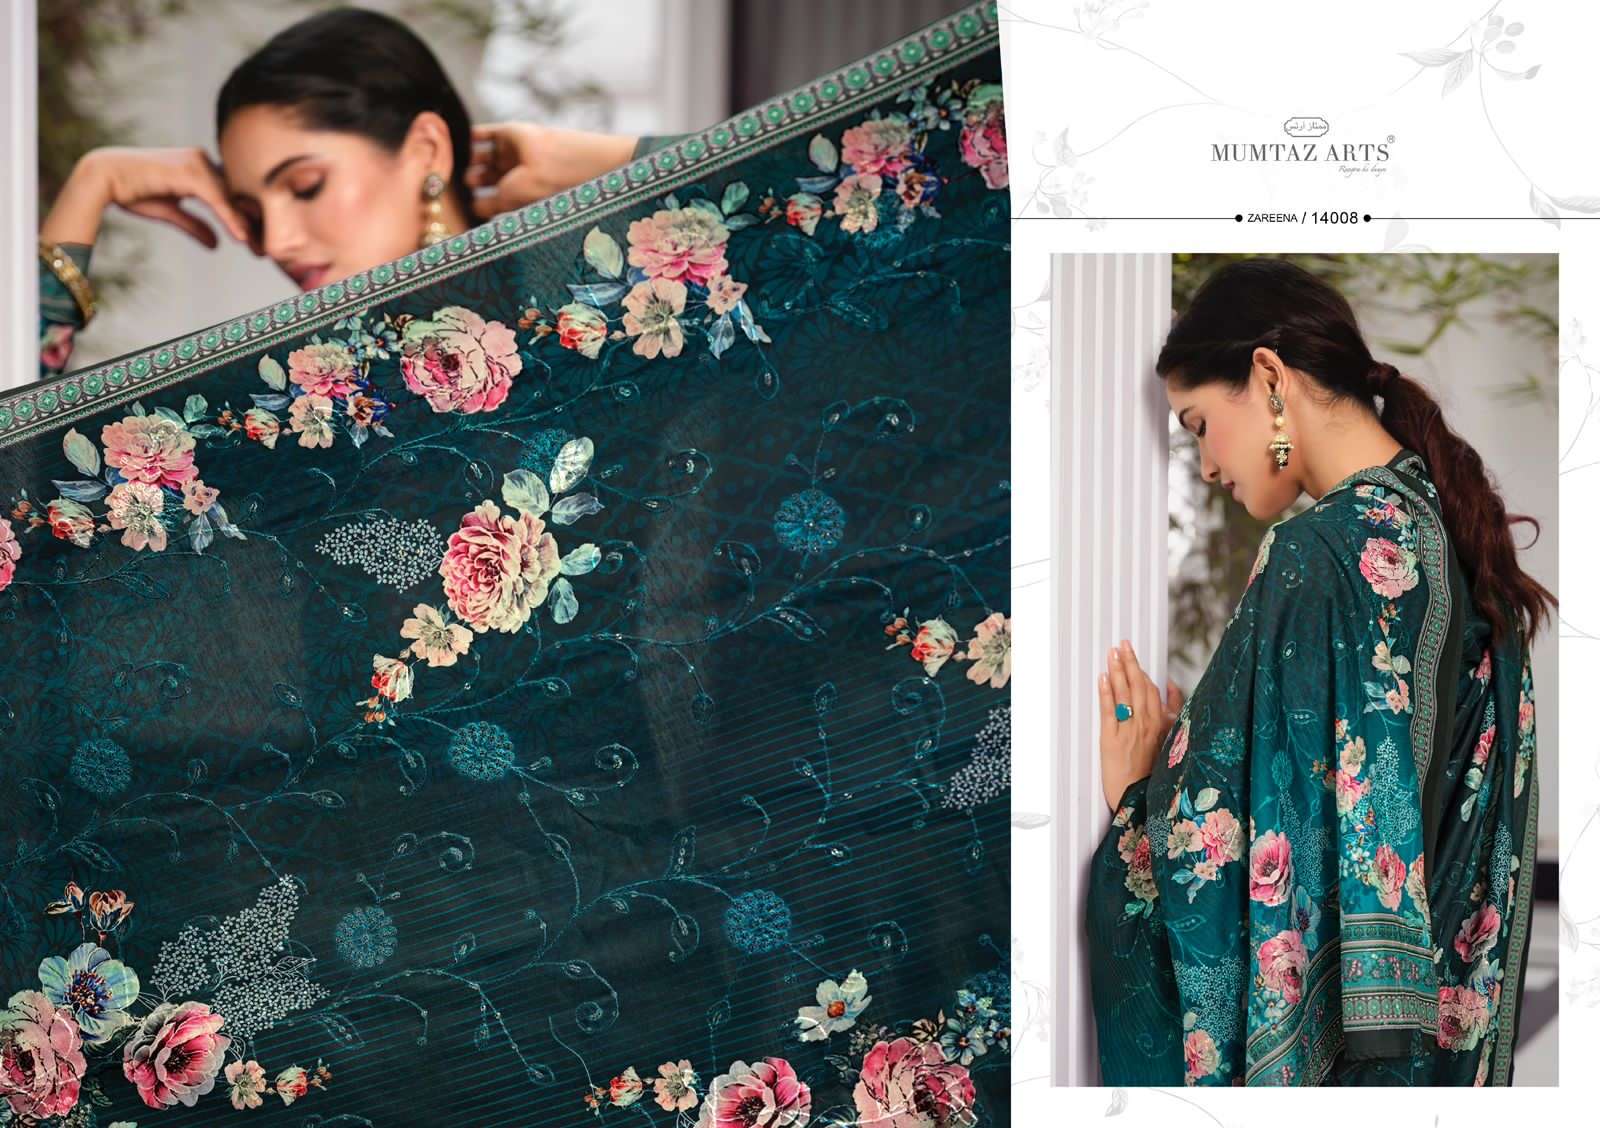 mumtaz arts zareena 14001-14008 series exclusive designer salwar kameez online dealer surat 